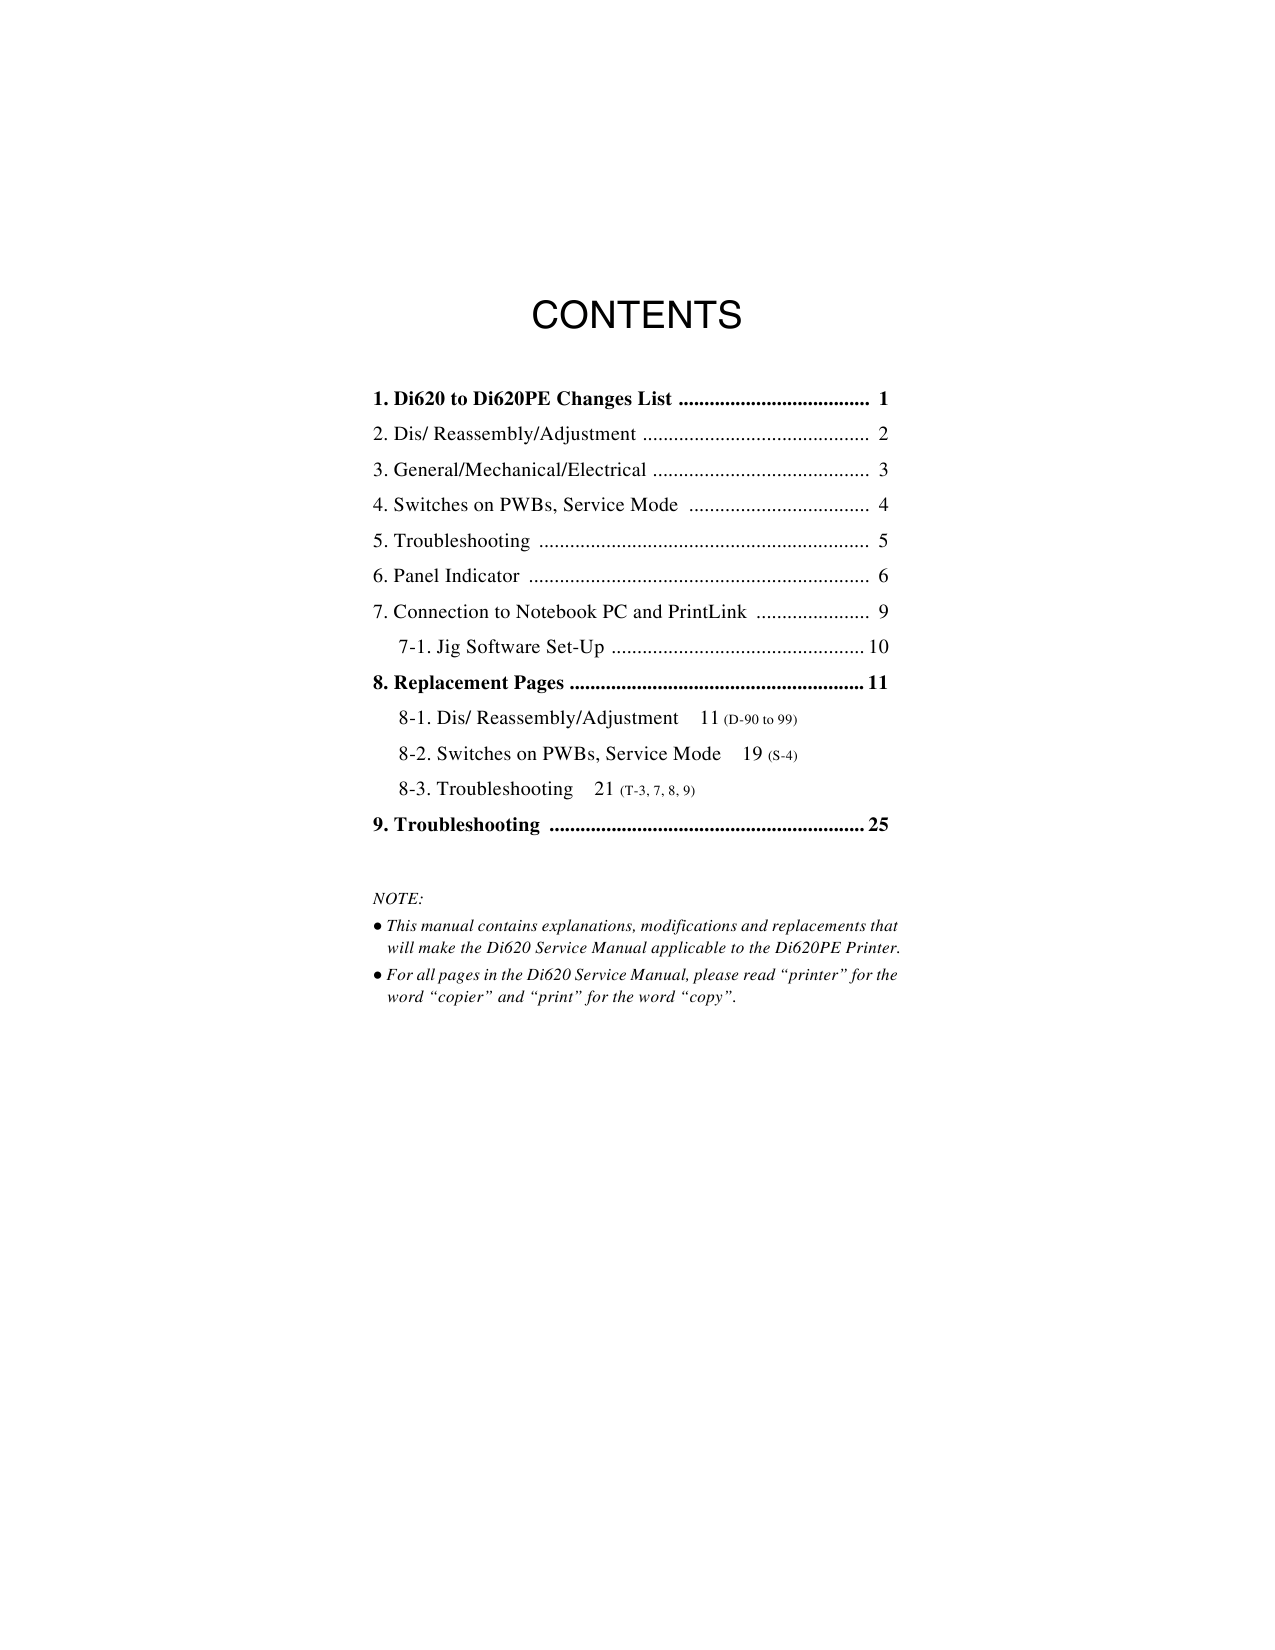 Konica-Minolta MINOLTA Di620PE Service Manual-4